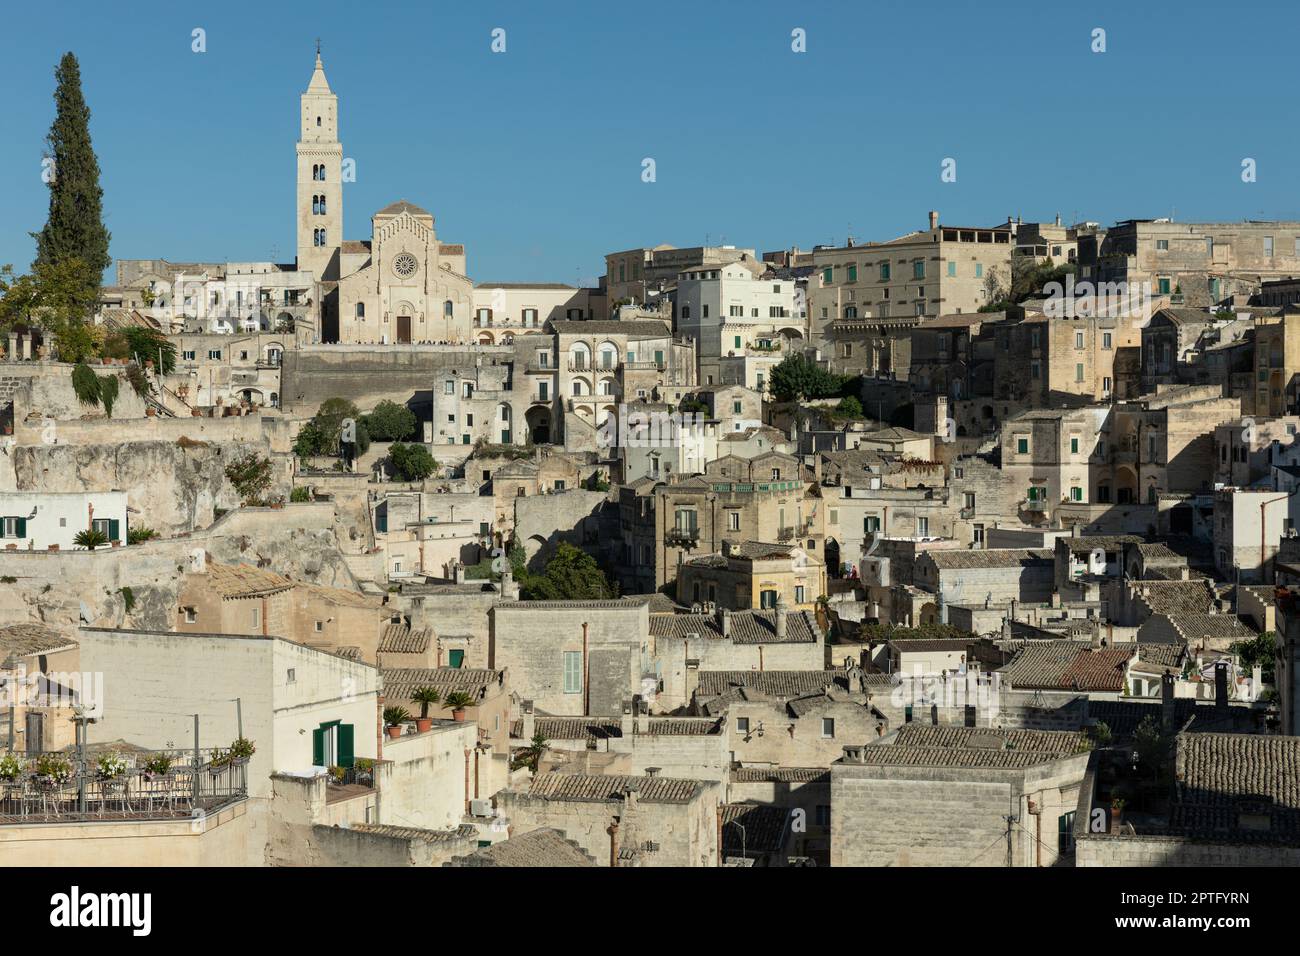 La ville historique de Matera dans le sud de l'Italie Banque D'Images